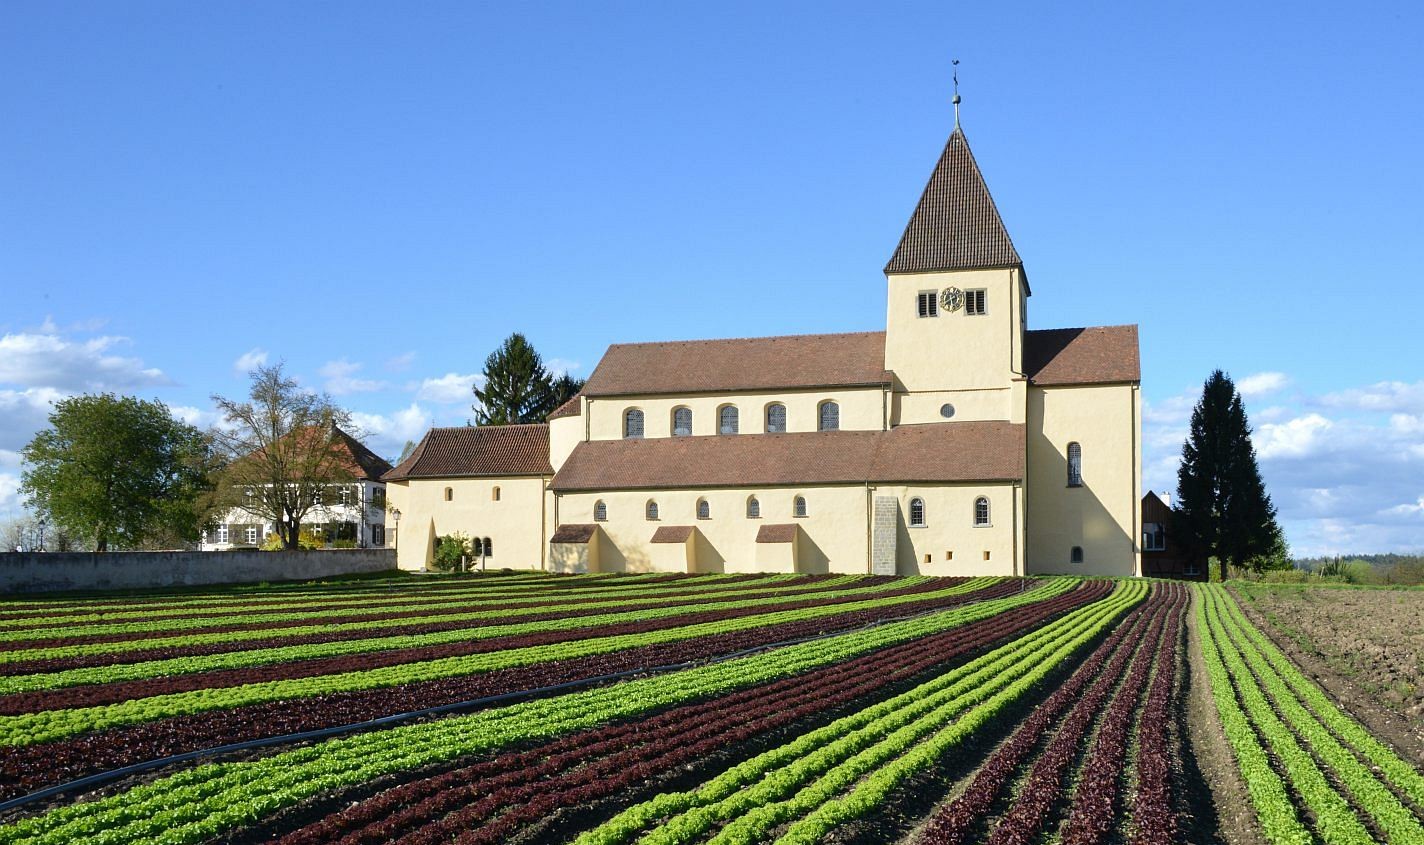 Kirche St. Georg mit Salatfeld, Reichenau